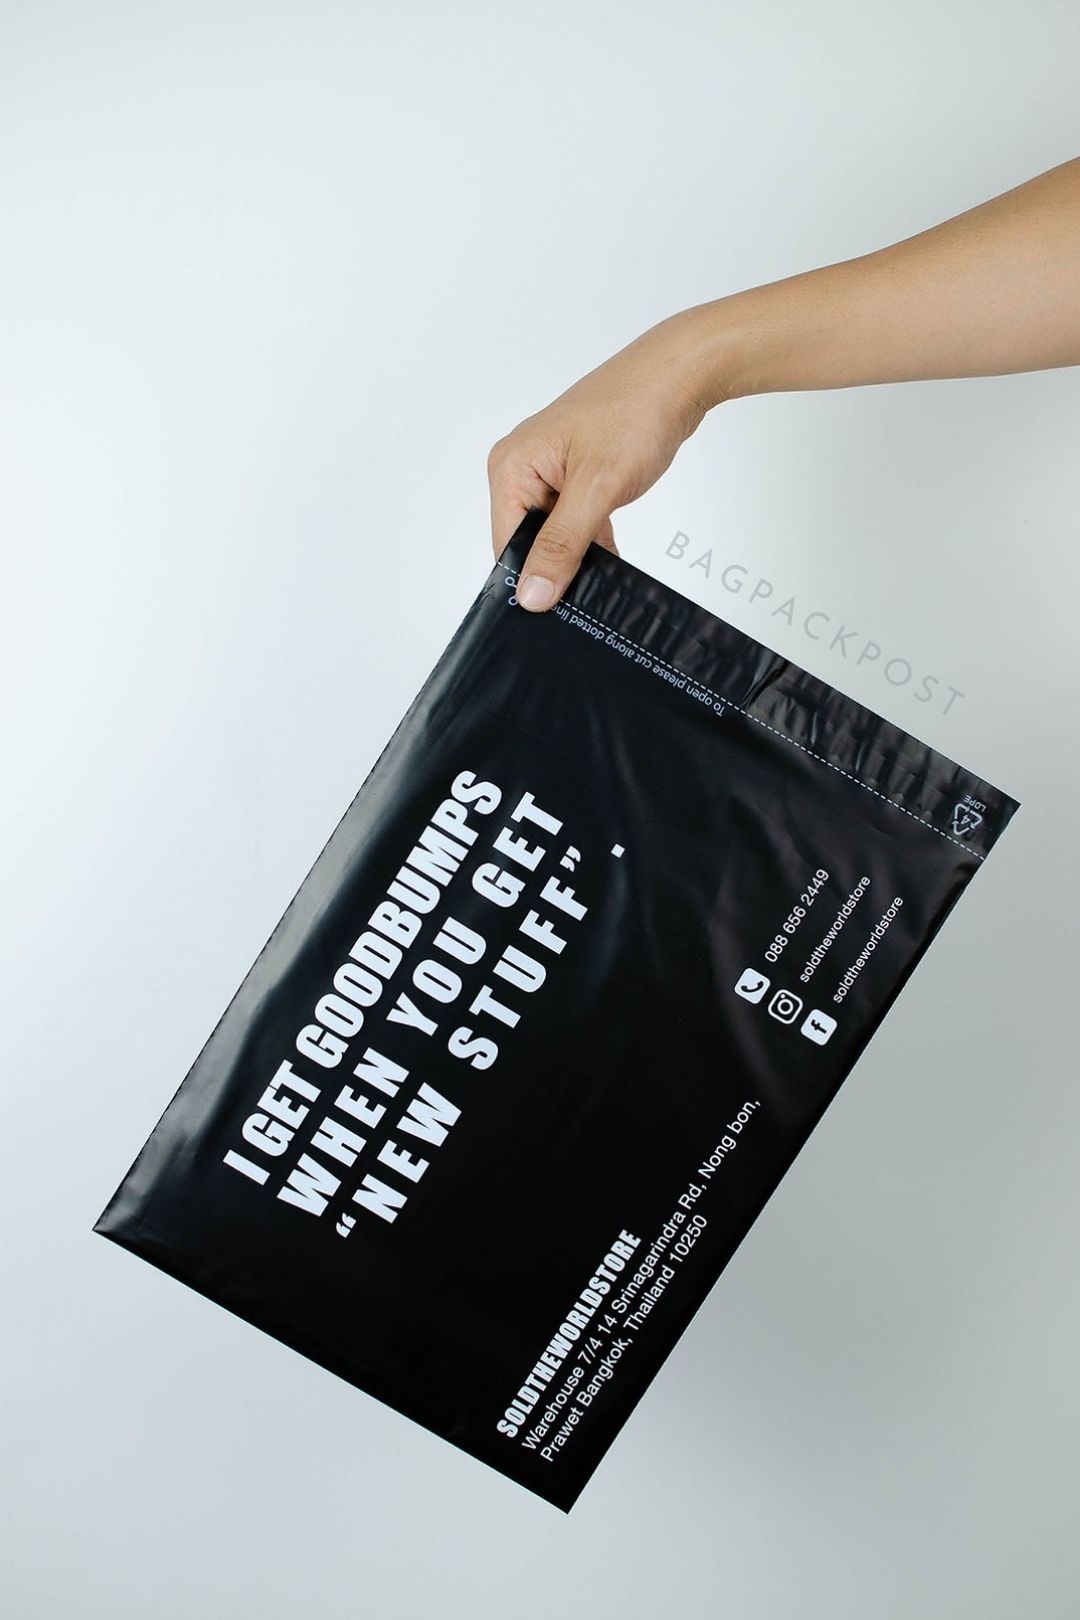 ผลิตถุงไปรษณีย์ ซองไปรษณีย์พิมพ์ลาย SoldTheWorldStore ซองไปรษณีย์สีดำ ถุงไปรษณีย์พิมพ์ลาย 1 BagPackPost